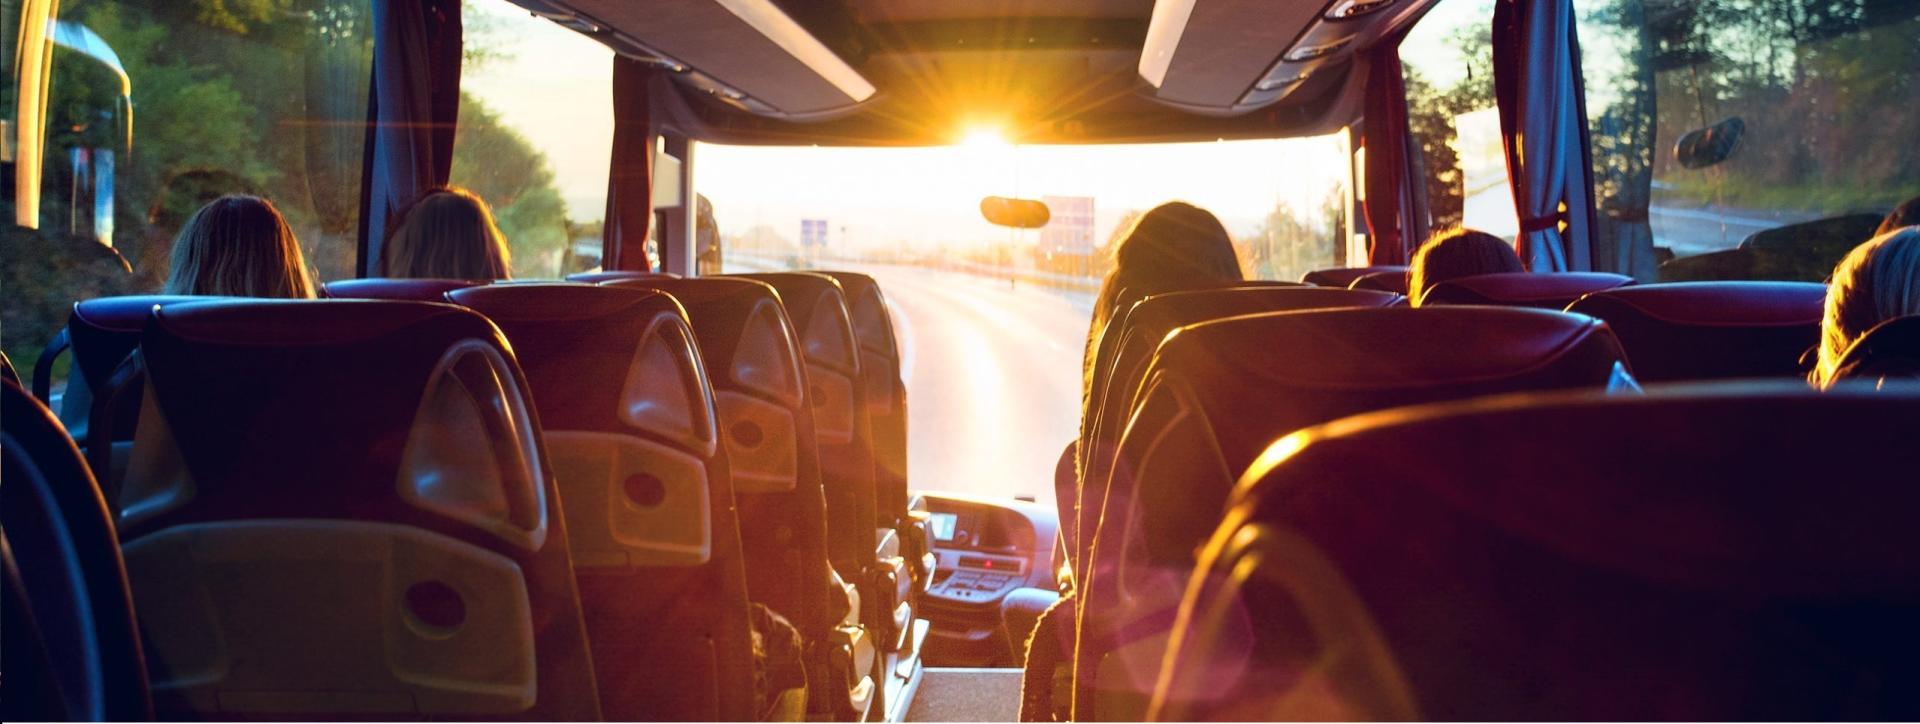 Путешествуем с комфортом: лучшие практики для комфортного путешествия на автобусе фото 